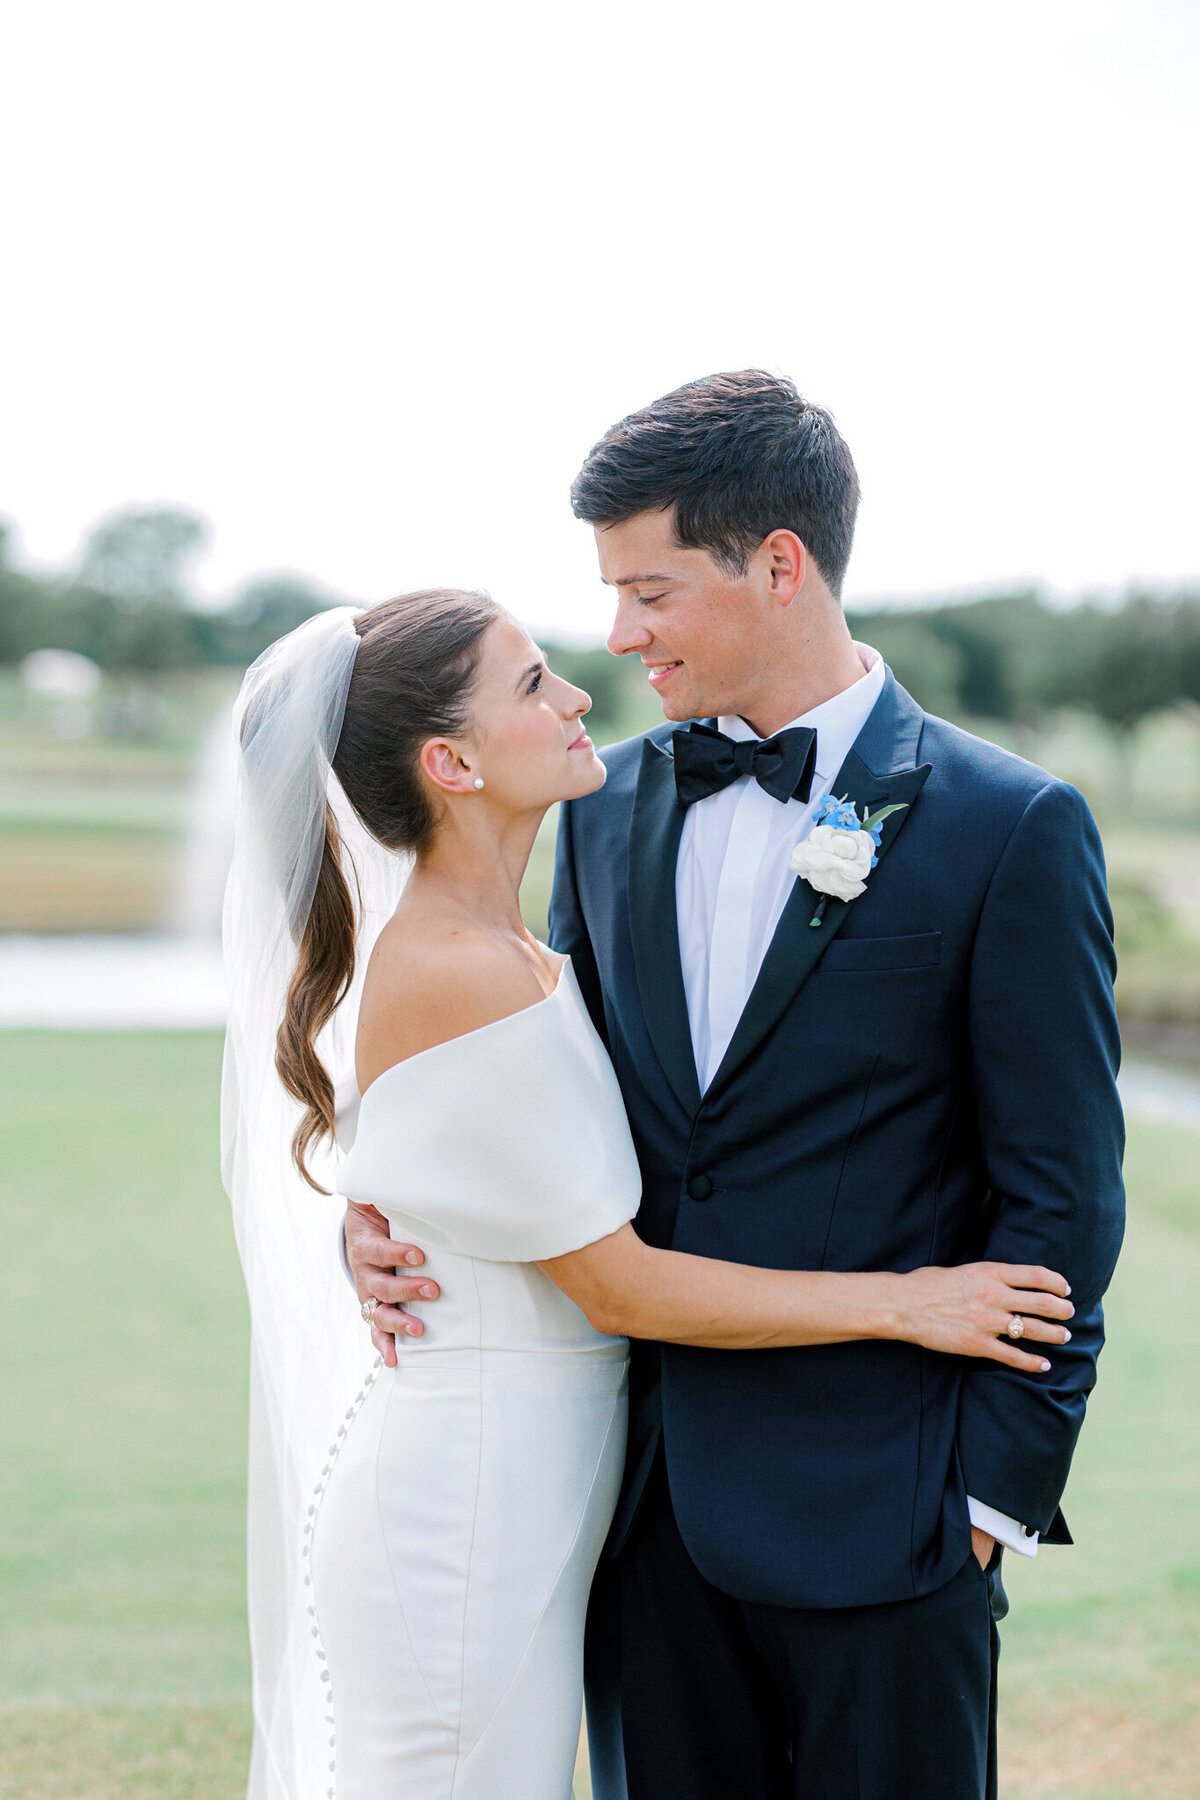 Annie & Logan's Wedding | Dallas Wedding Photographer | Sami Kathryn Photography-142